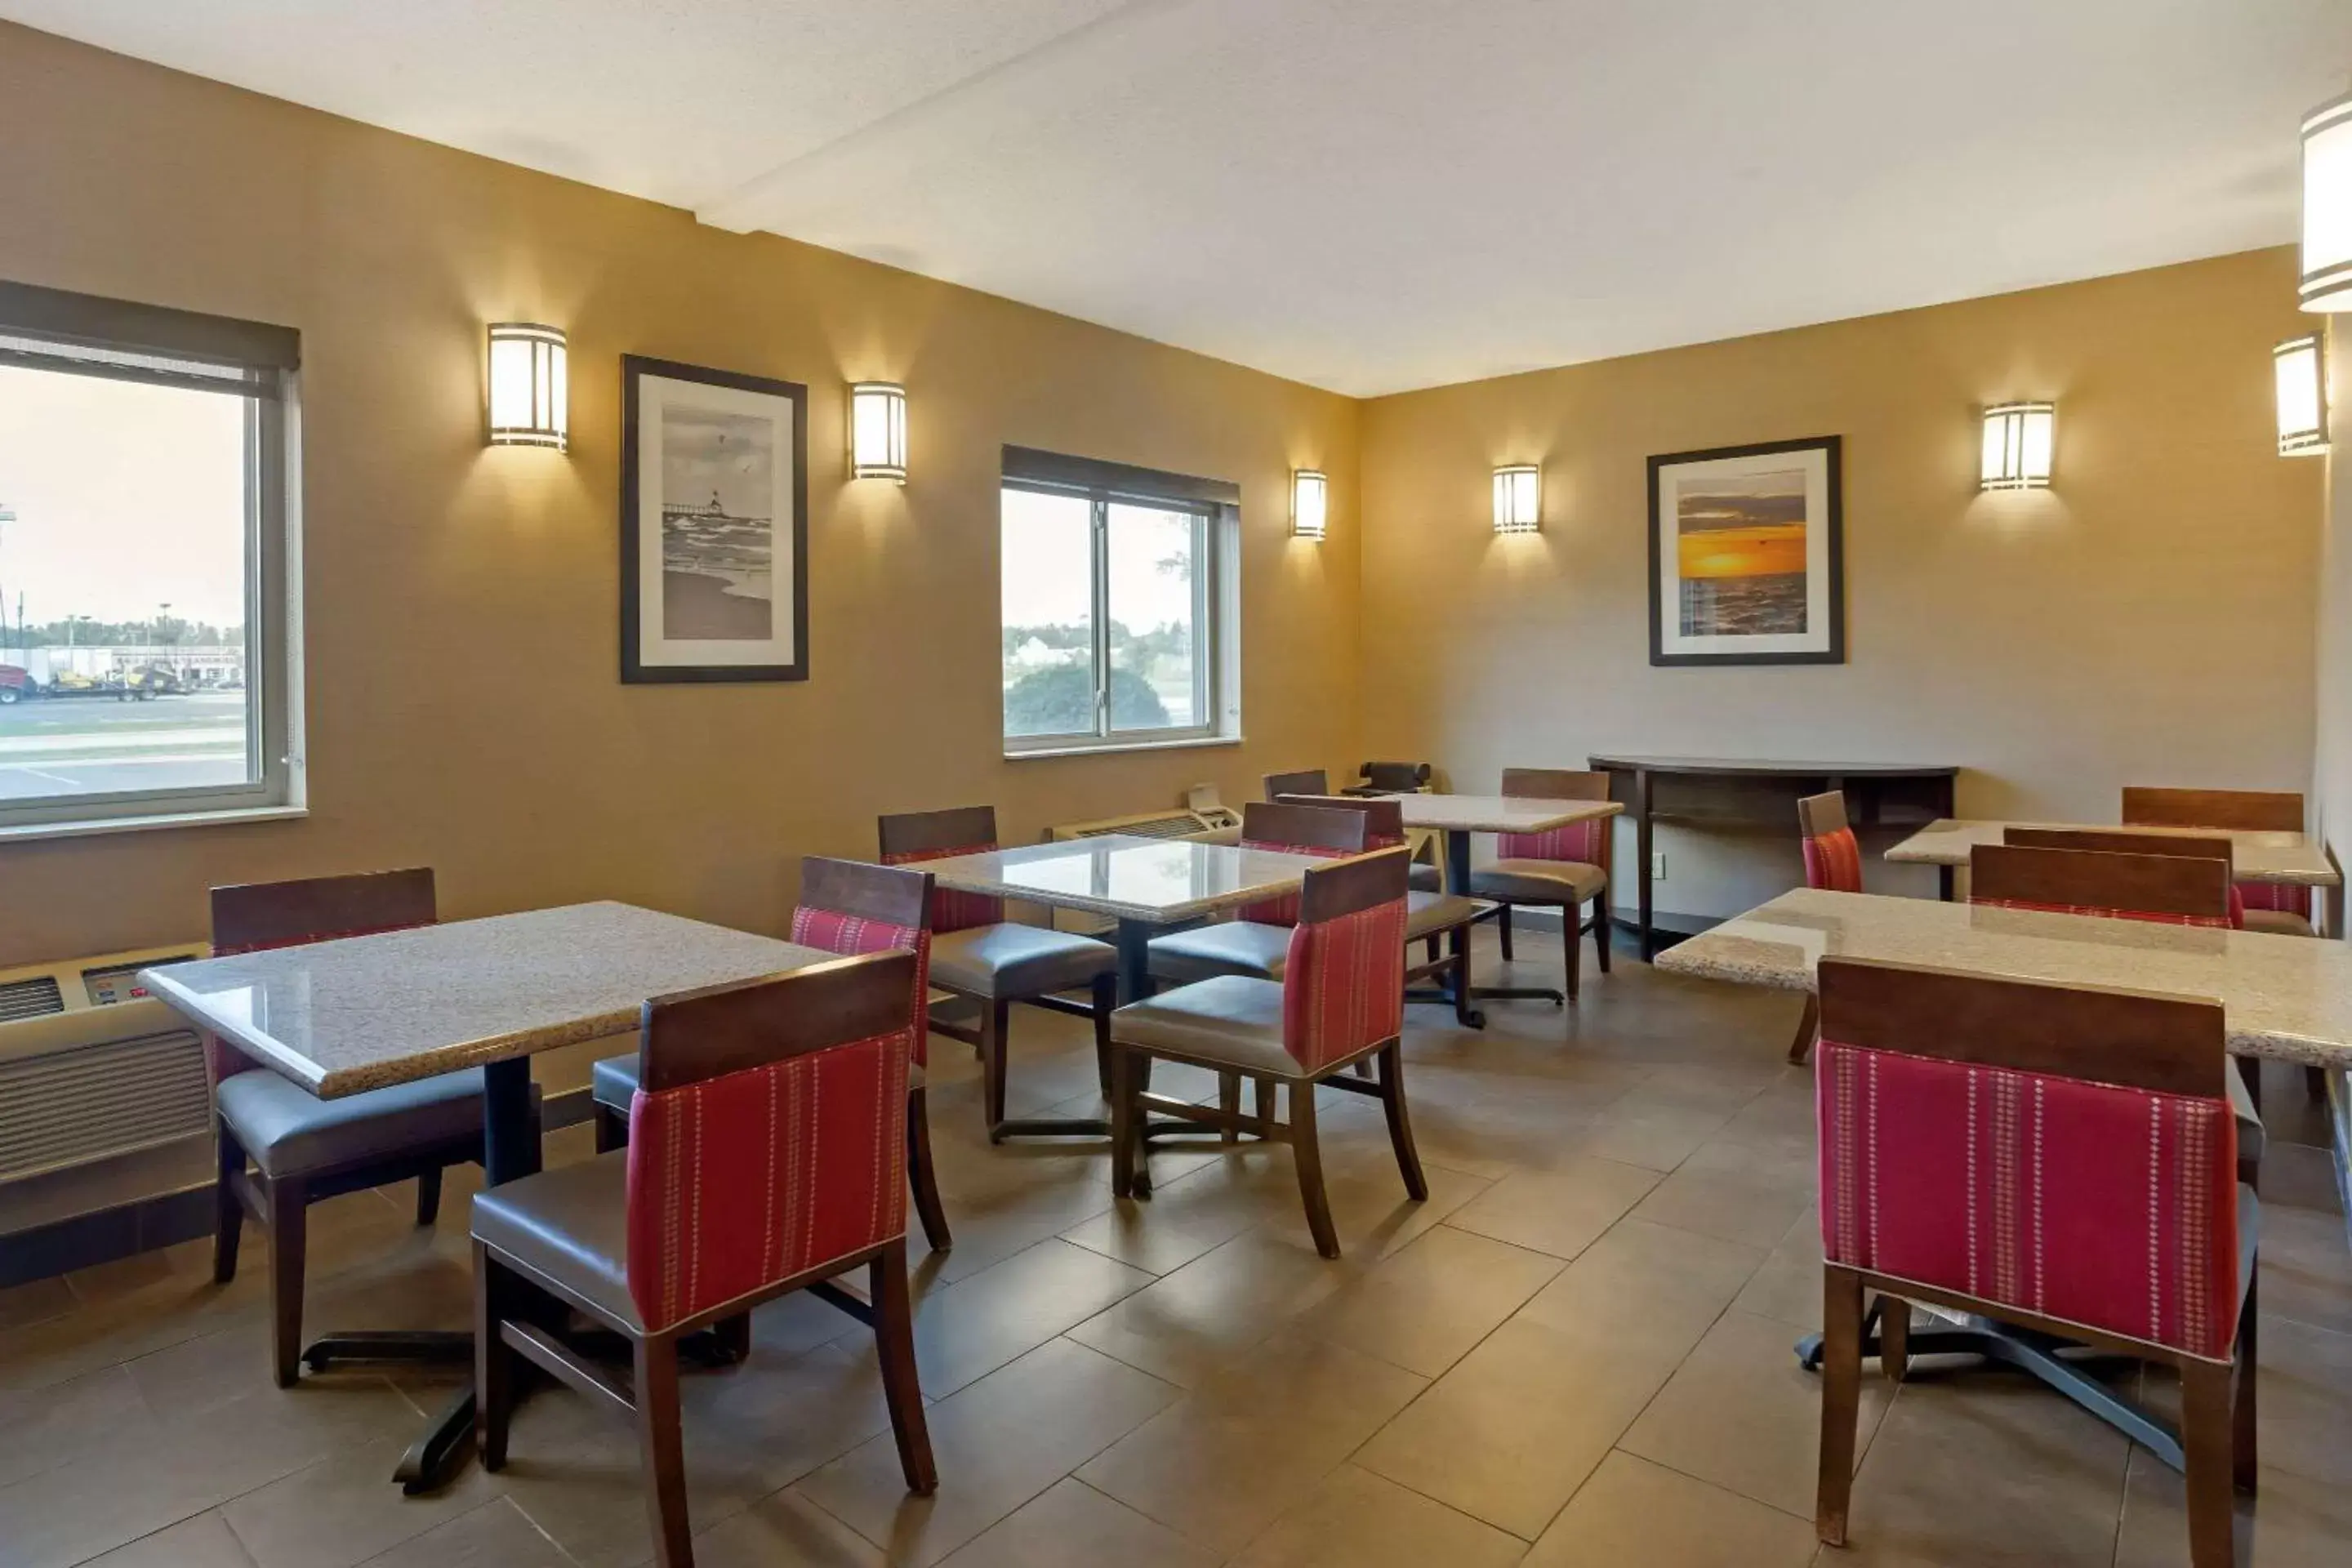 Restaurant/Places to Eat in Comfort Inn Hobart - Merrillville